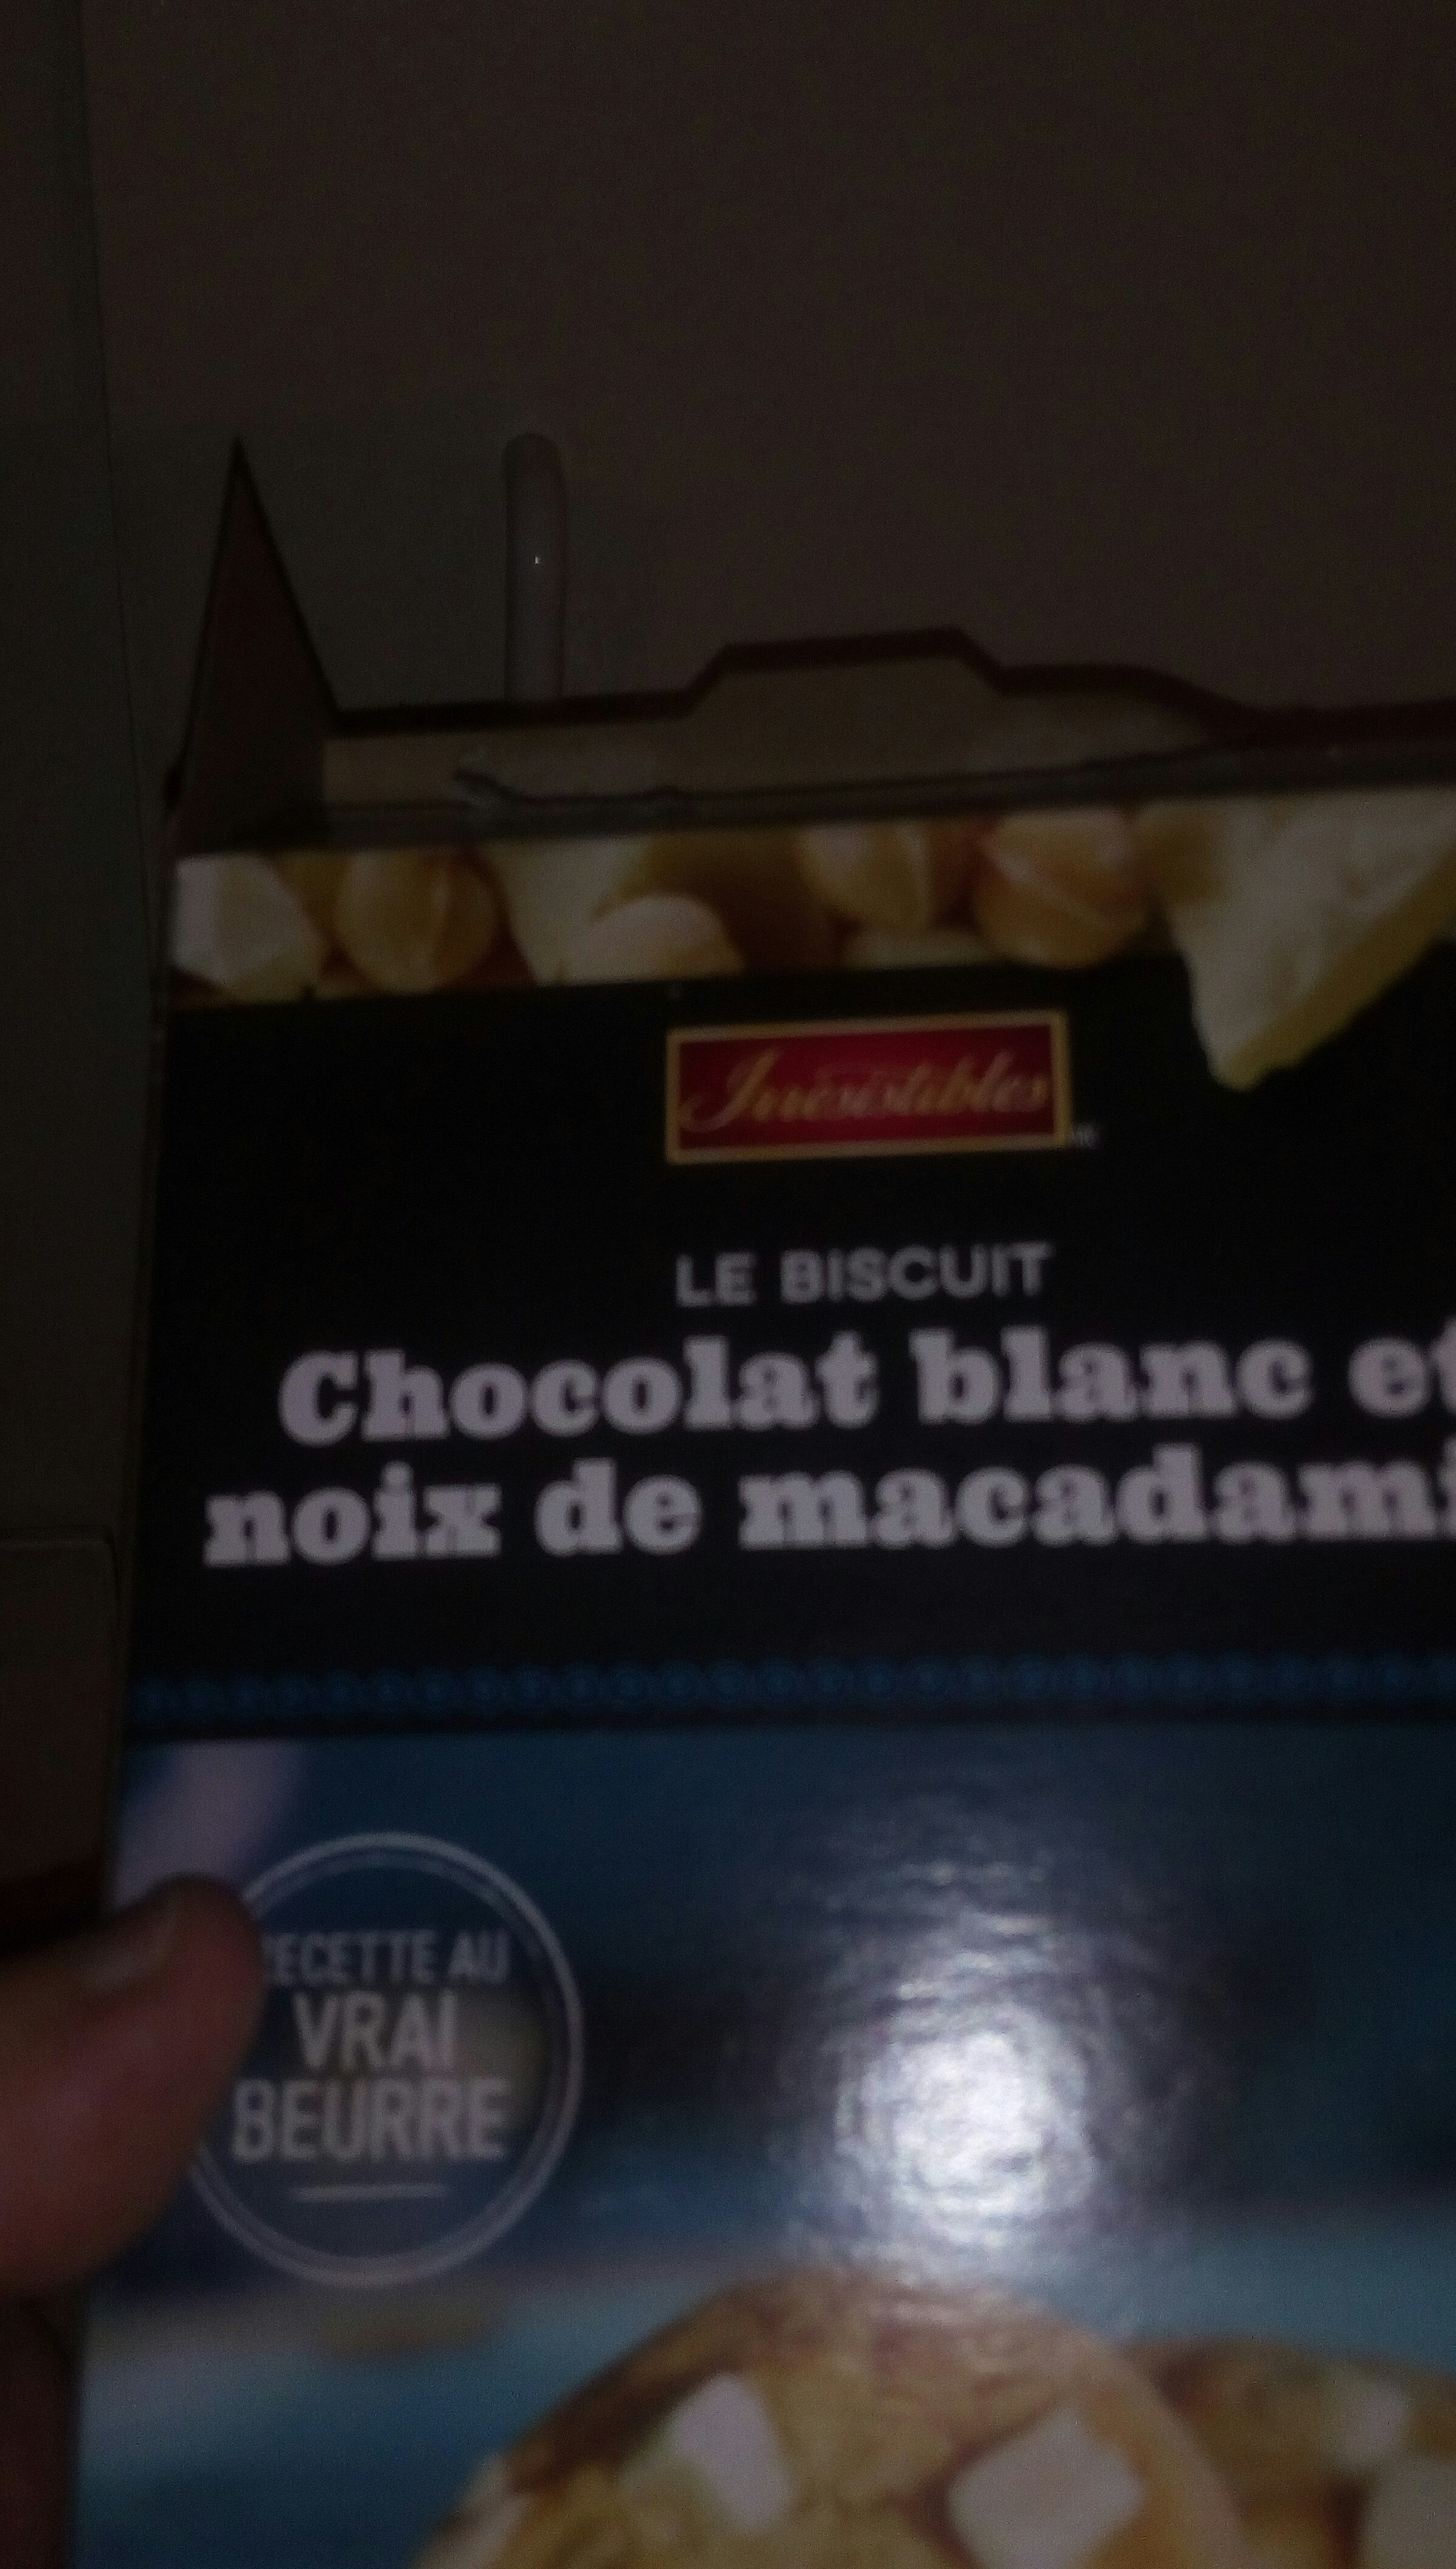 Le biscuit chocolat blanc et noix de macadam - Produit